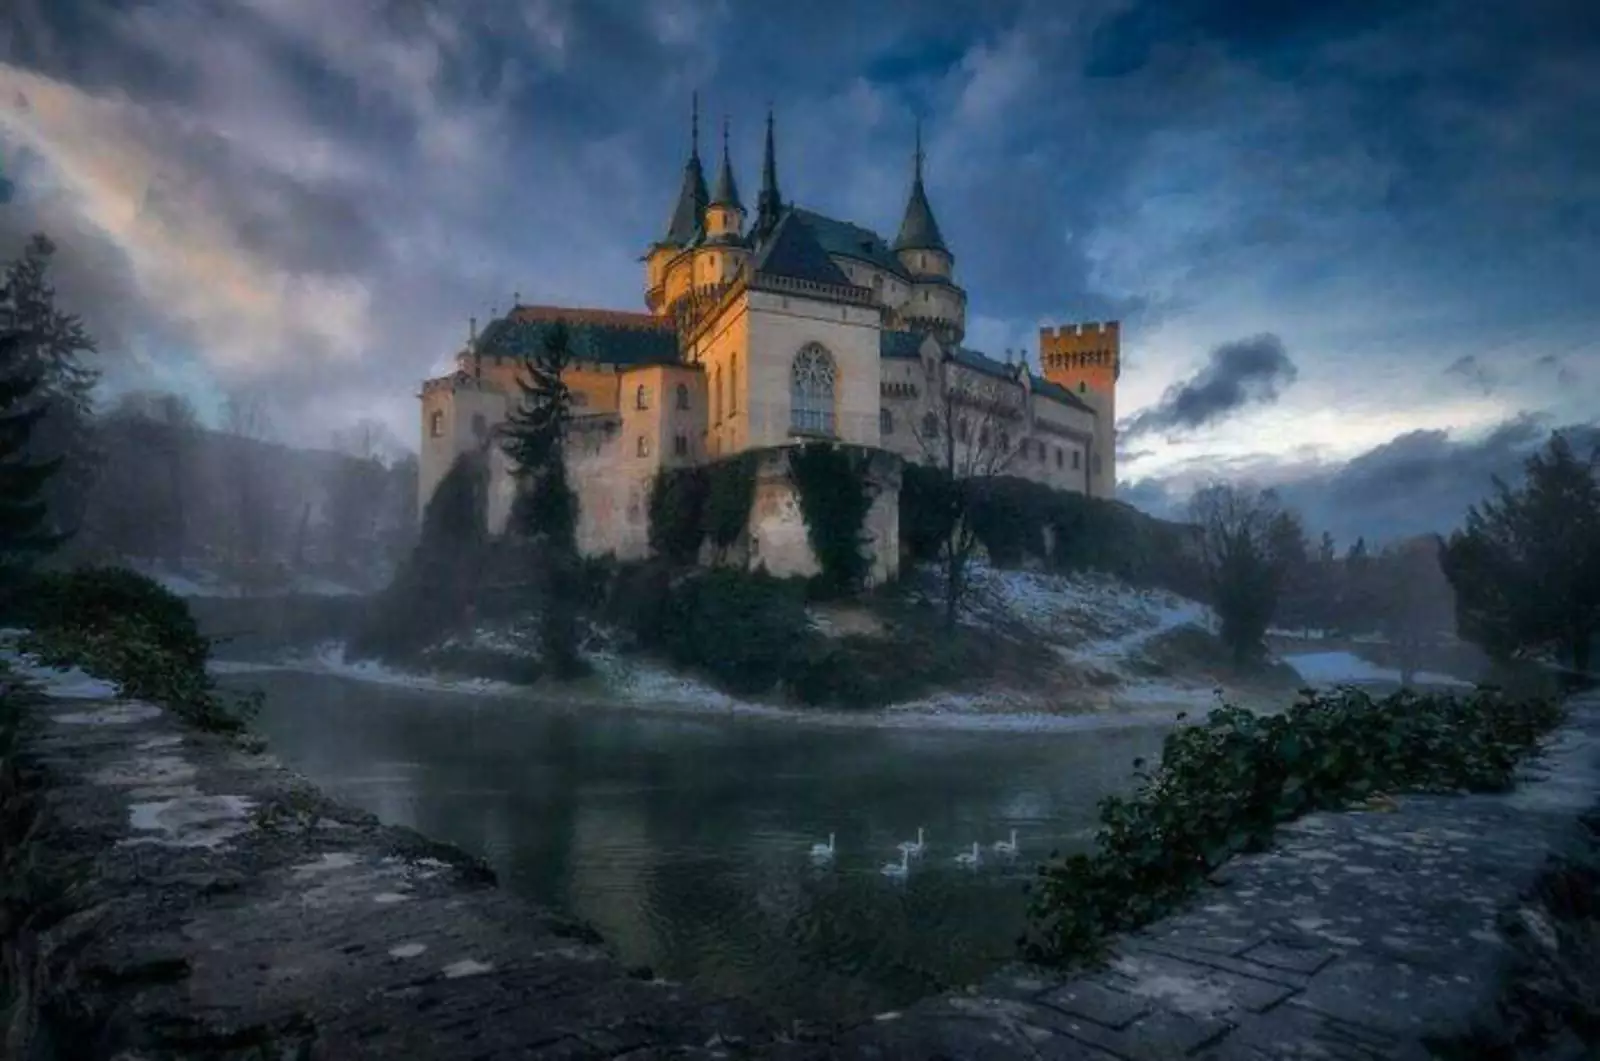 Построенный в XII веке замок, который находится в Словакии.